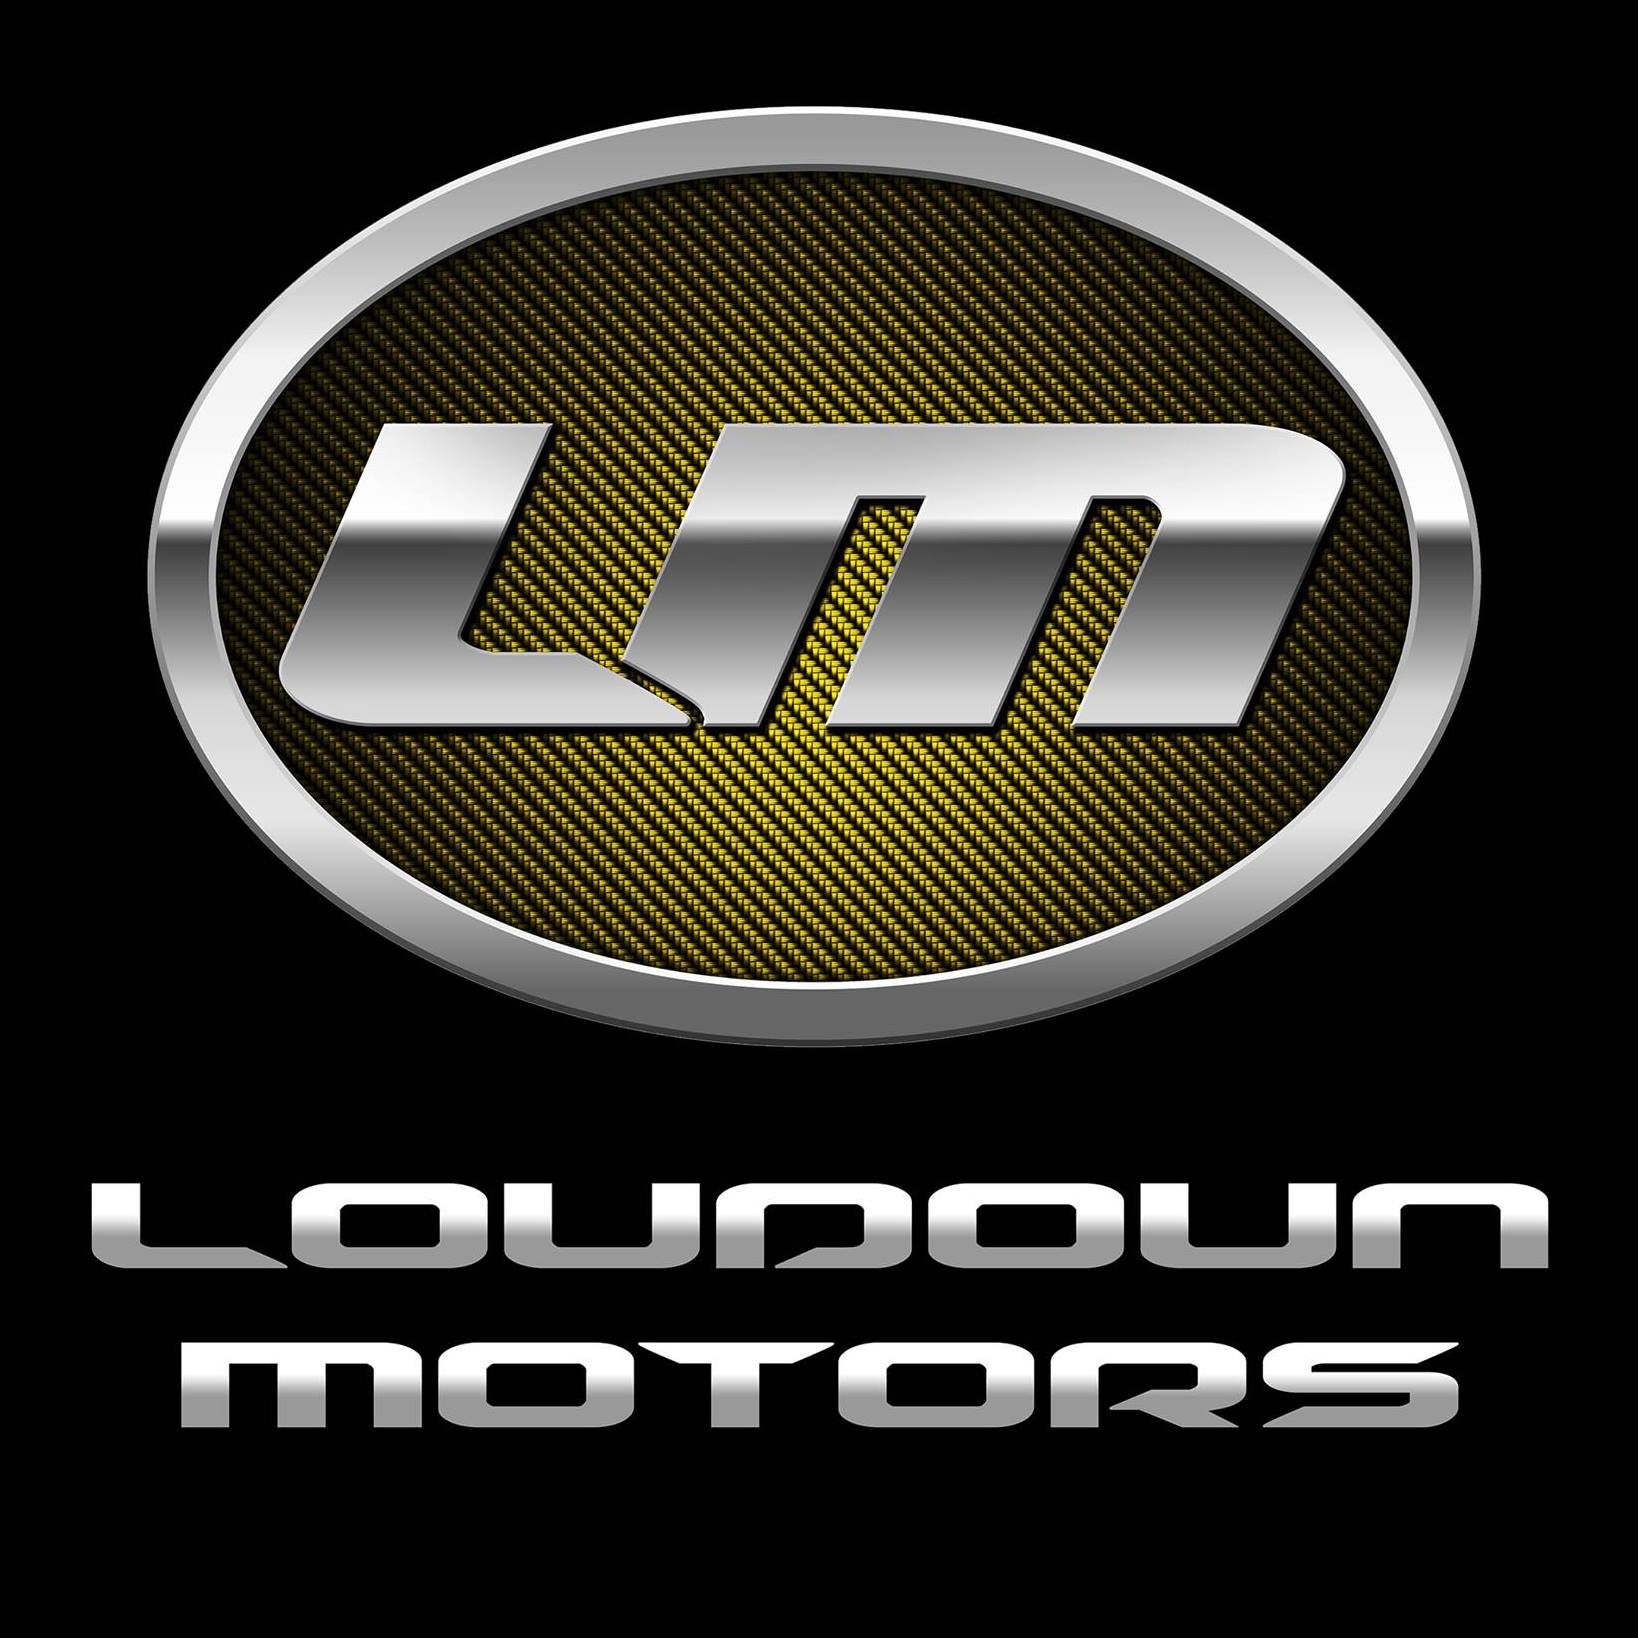 Loudoun Motors